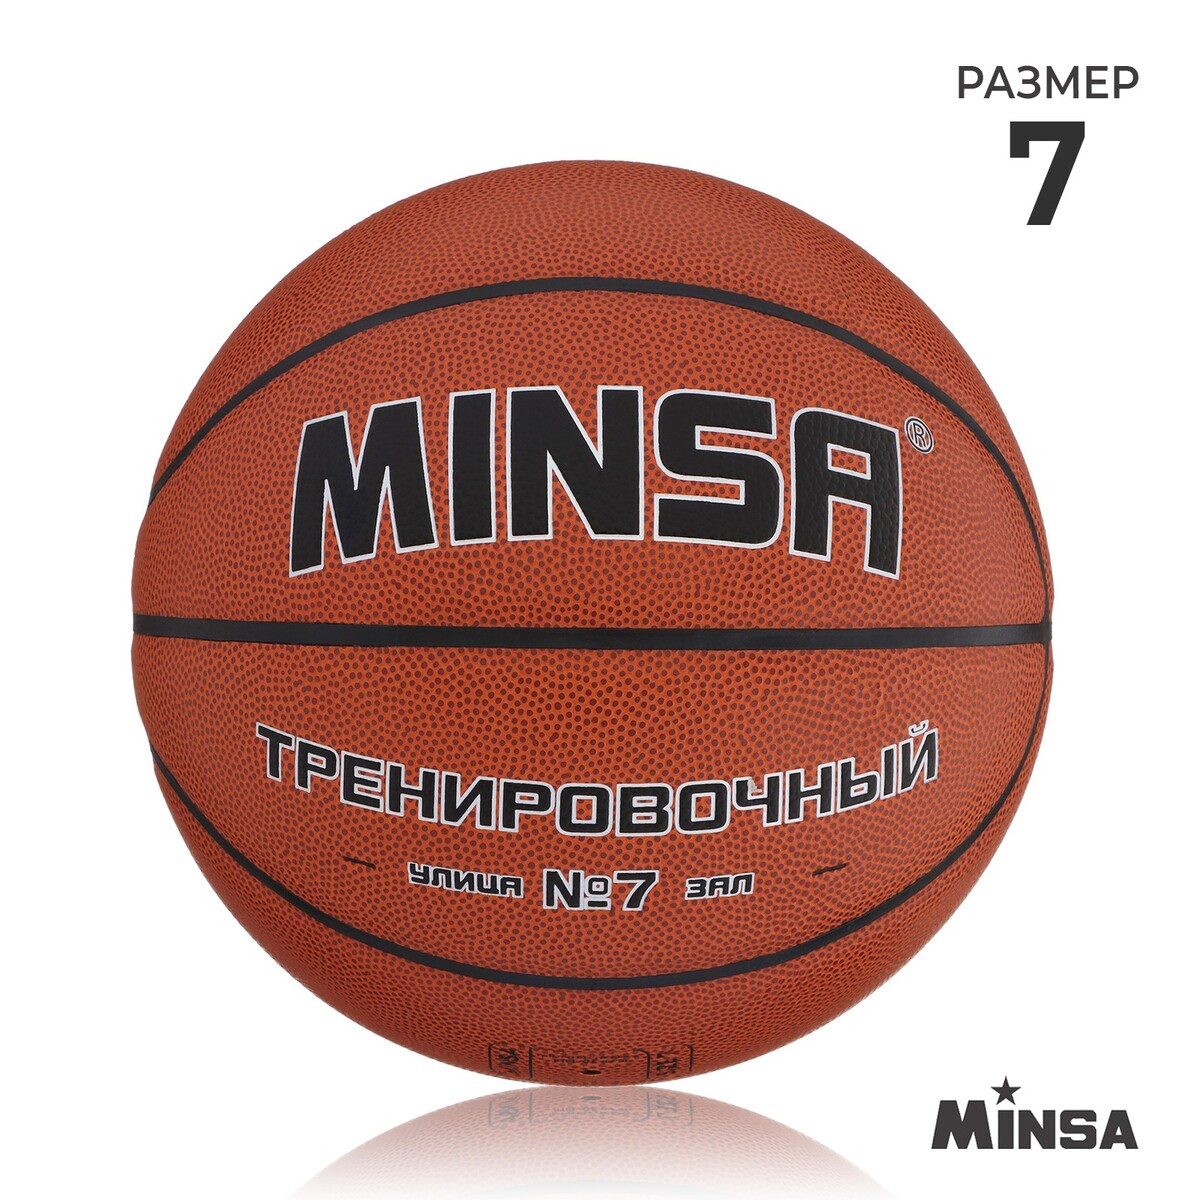 Баскетбольный мяч minsa, тренировочный, pu, клееный, 8 панелей, р. 7 баскетбольный мяч minsa матчевый microfiber pu клееный 8 панелей р 6